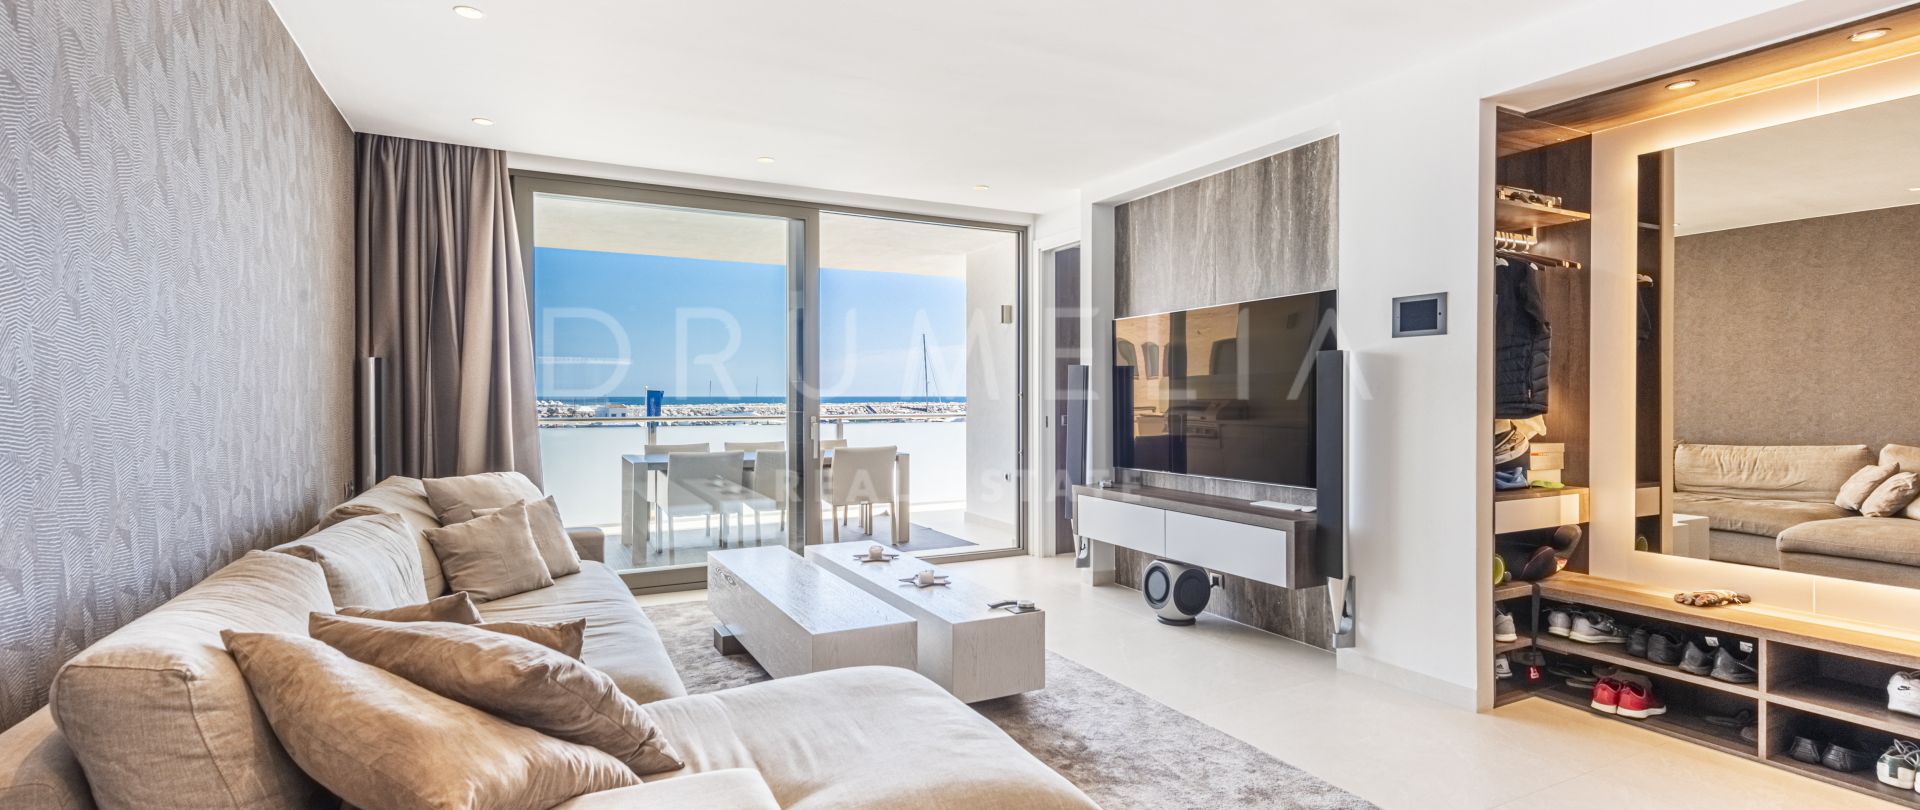 Unik, chic och modern lägenhet i Hollywoodstil i Puerto Banus, Marbella